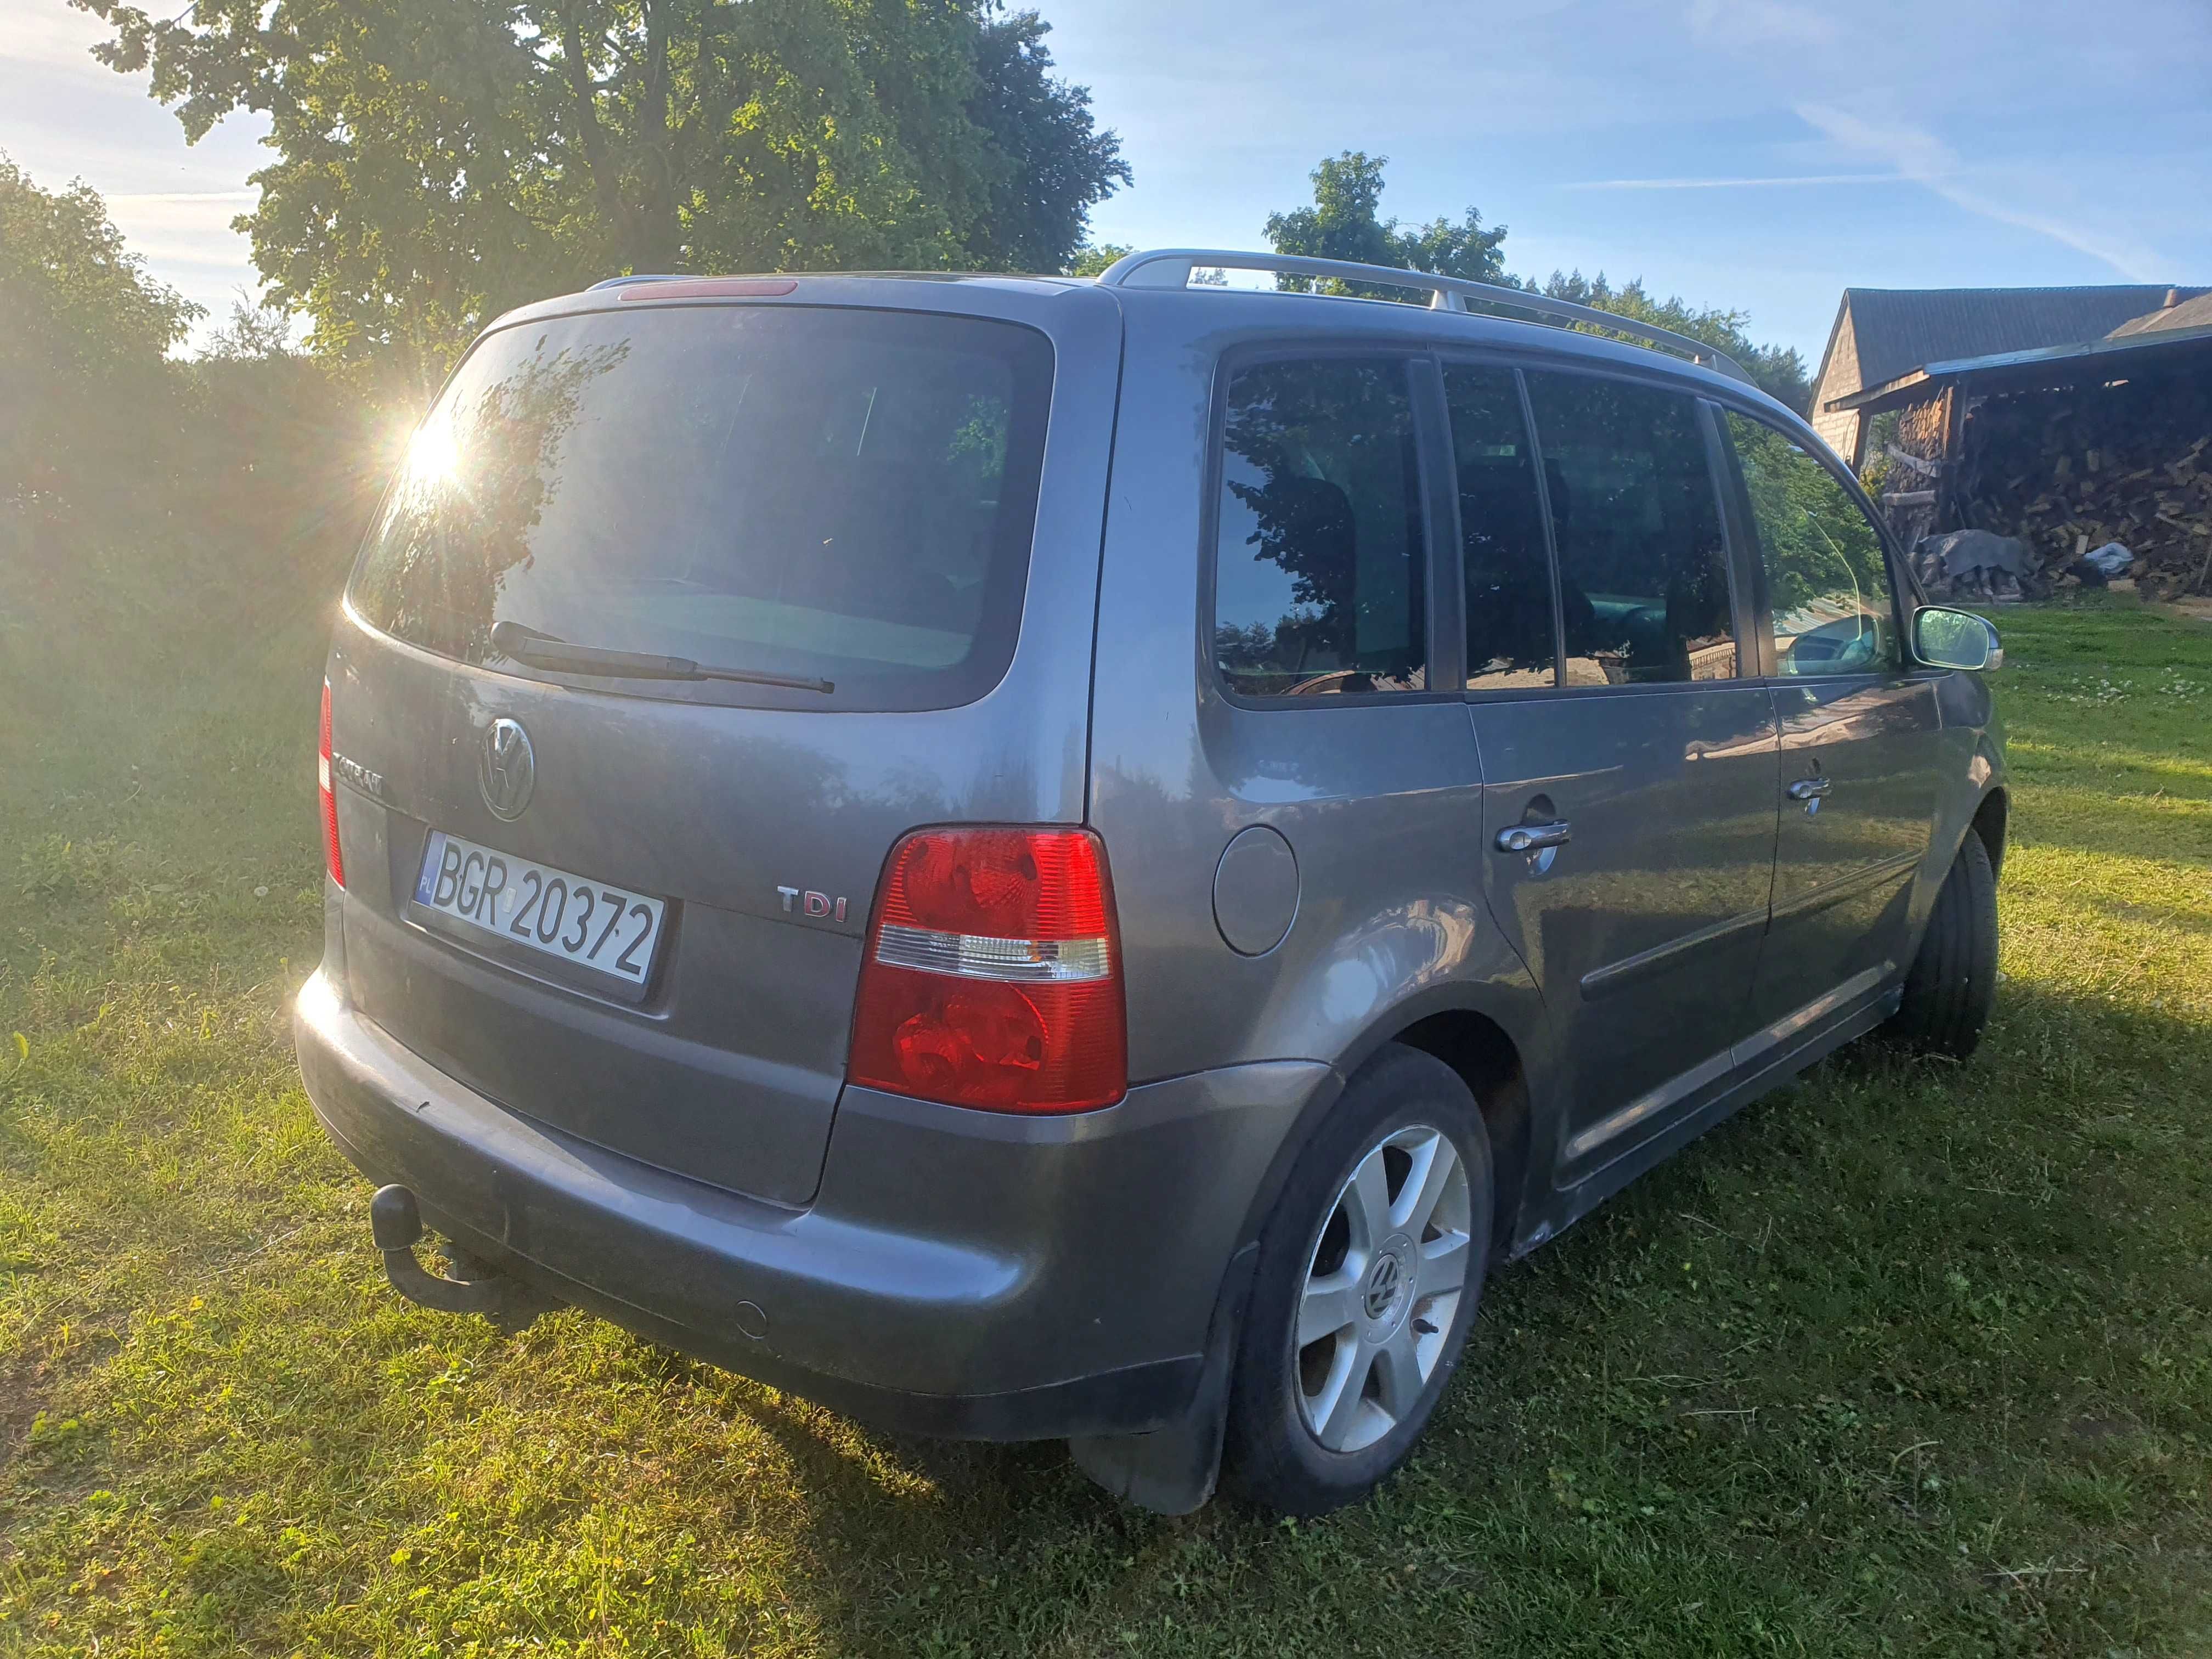 VW Touran, 2.0 TDI